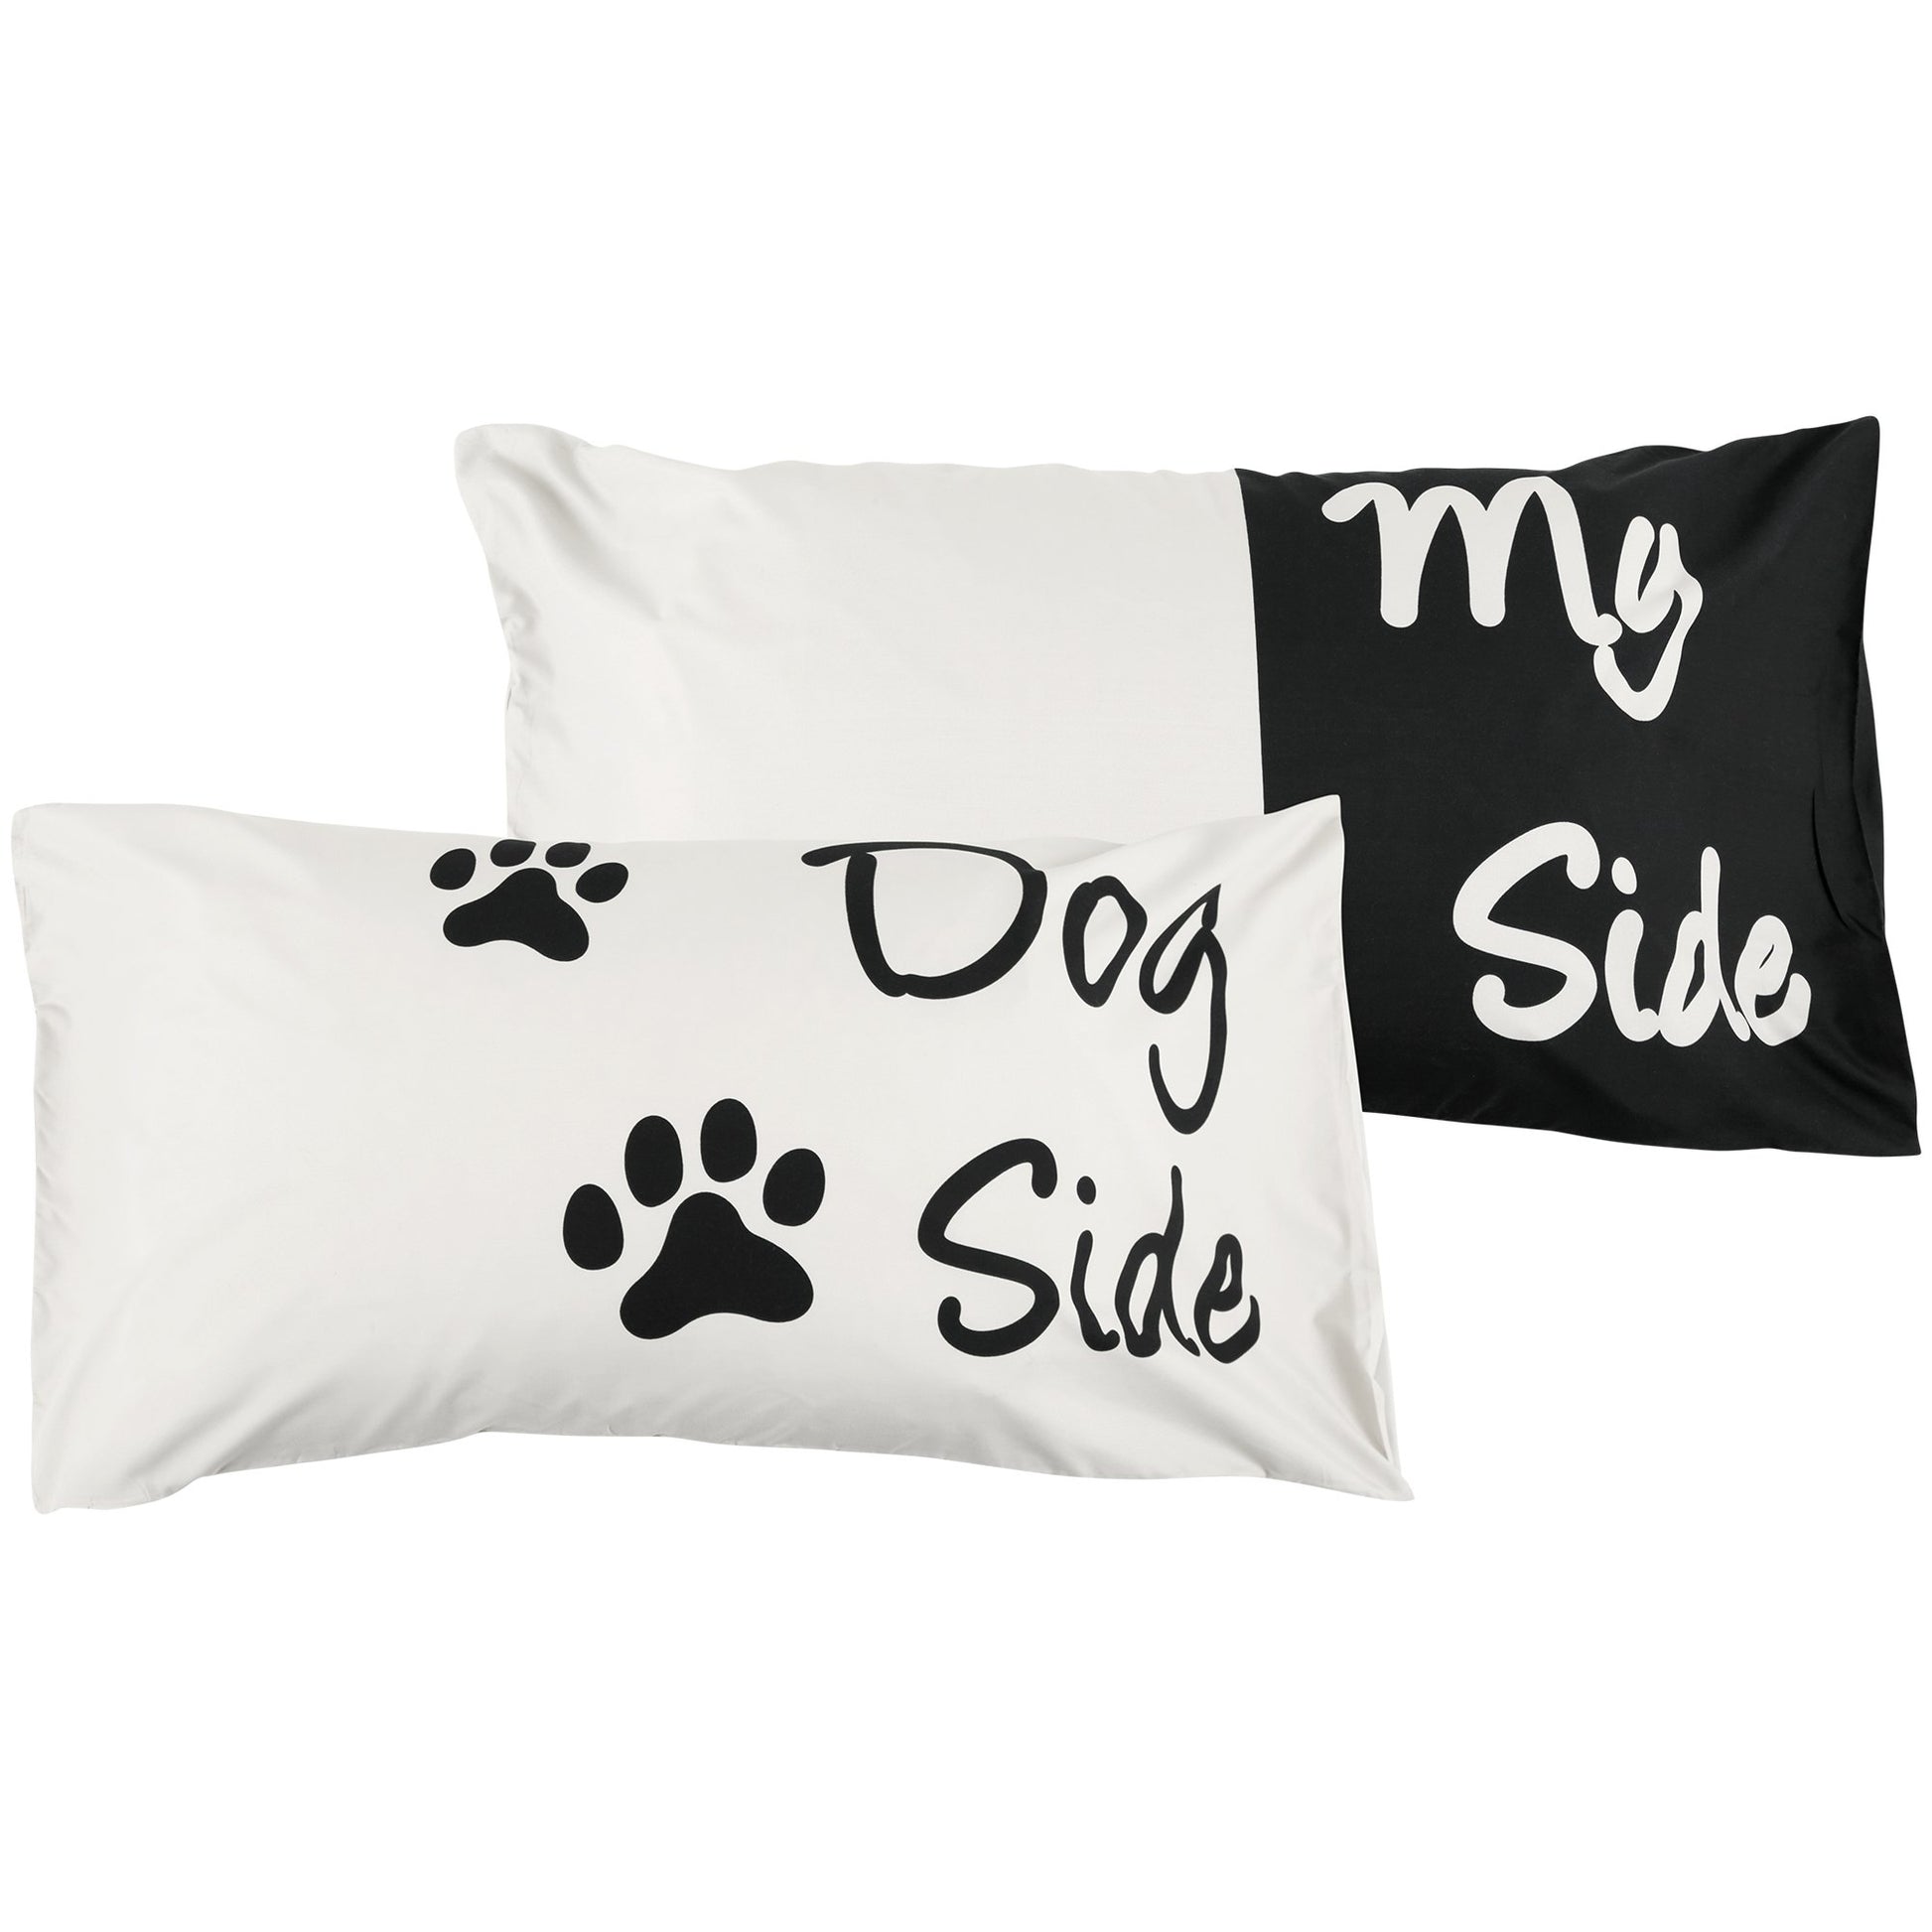 Pet Side Duvet Cover & Pillow Case Set